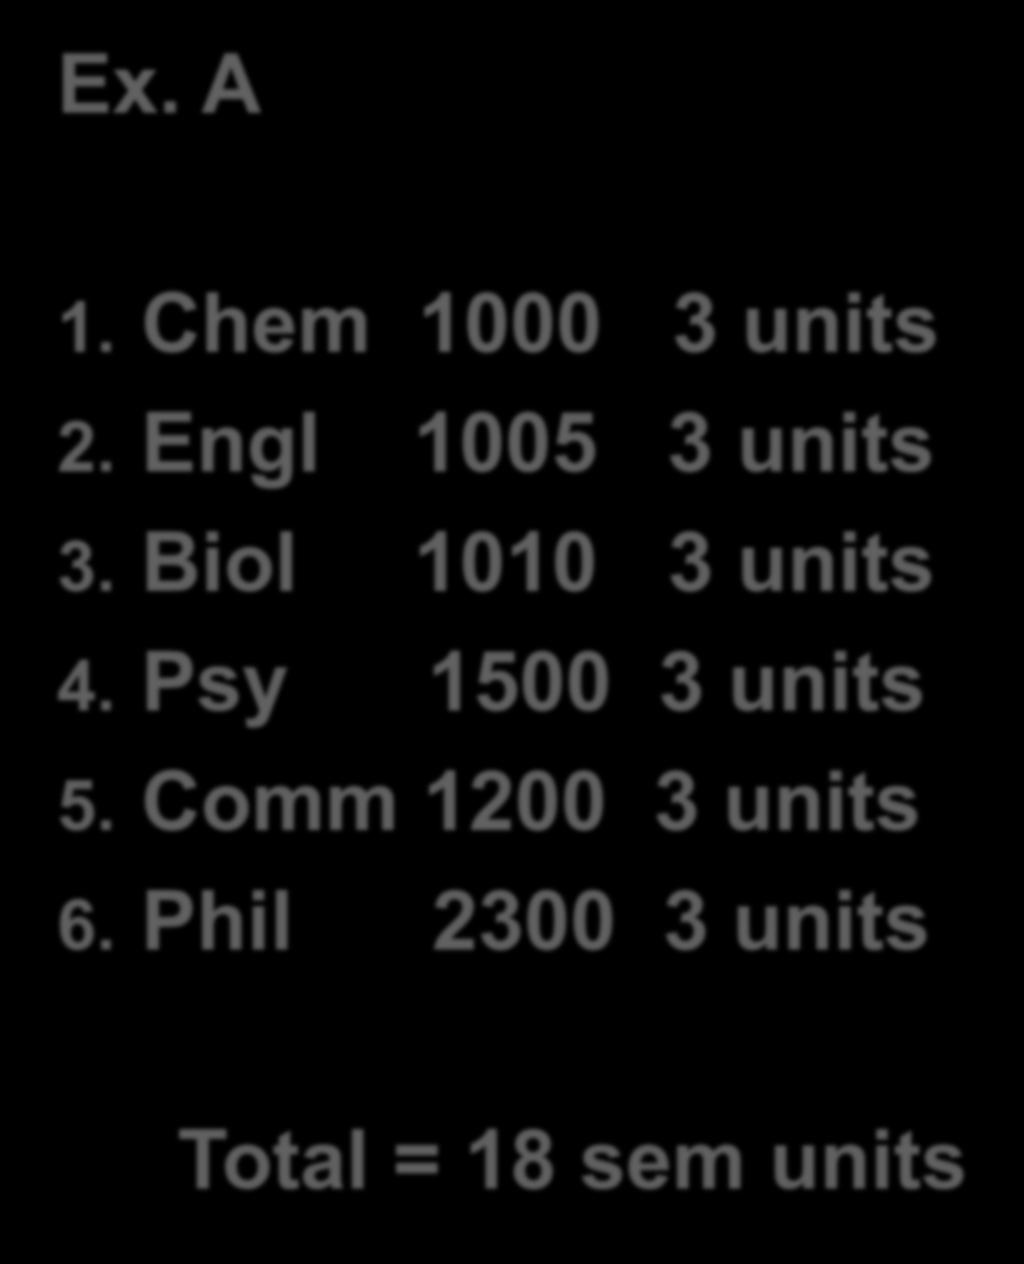 Phil 2300 3 units 1. Chem 1000 3 units 2. Comm 1200 3 units 3. Psy 1500 3 units 4.